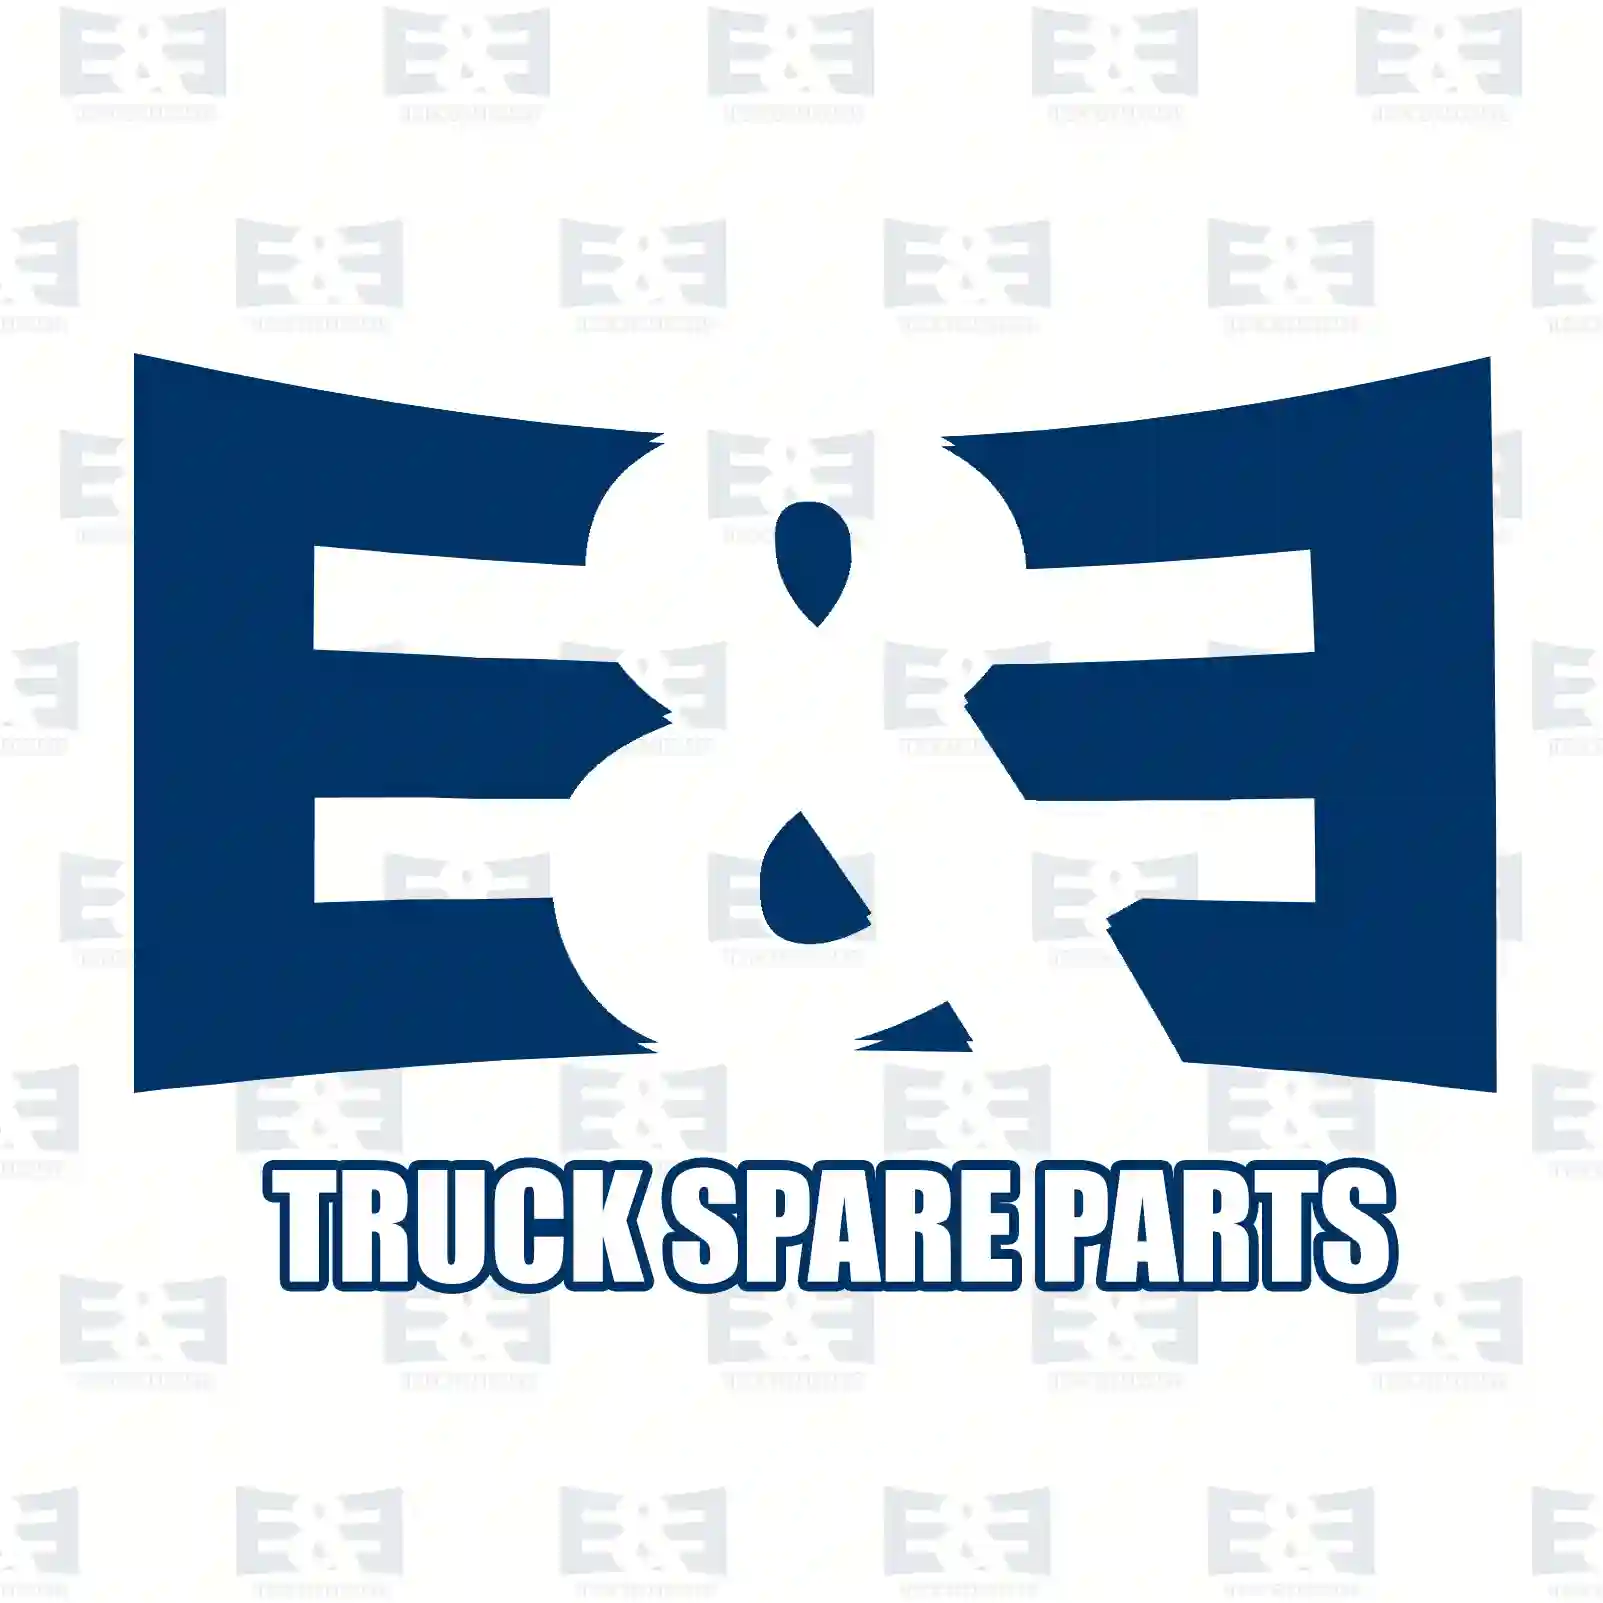 Brake disc, 2E2296277, 2E0615601A, 68013764AA, 68013764AA, 9064230012, 2E0615601A, 2E0615601A, 2E0615601A, , , ||  2E2296277 E&E Truck Spare Parts | Truck Spare Parts, Auotomotive Spare Parts Brake disc, 2E2296277, 2E0615601A, 68013764AA, 68013764AA, 9064230012, 2E0615601A, 2E0615601A, 2E0615601A, , , ||  2E2296277 E&E Truck Spare Parts | Truck Spare Parts, Auotomotive Spare Parts